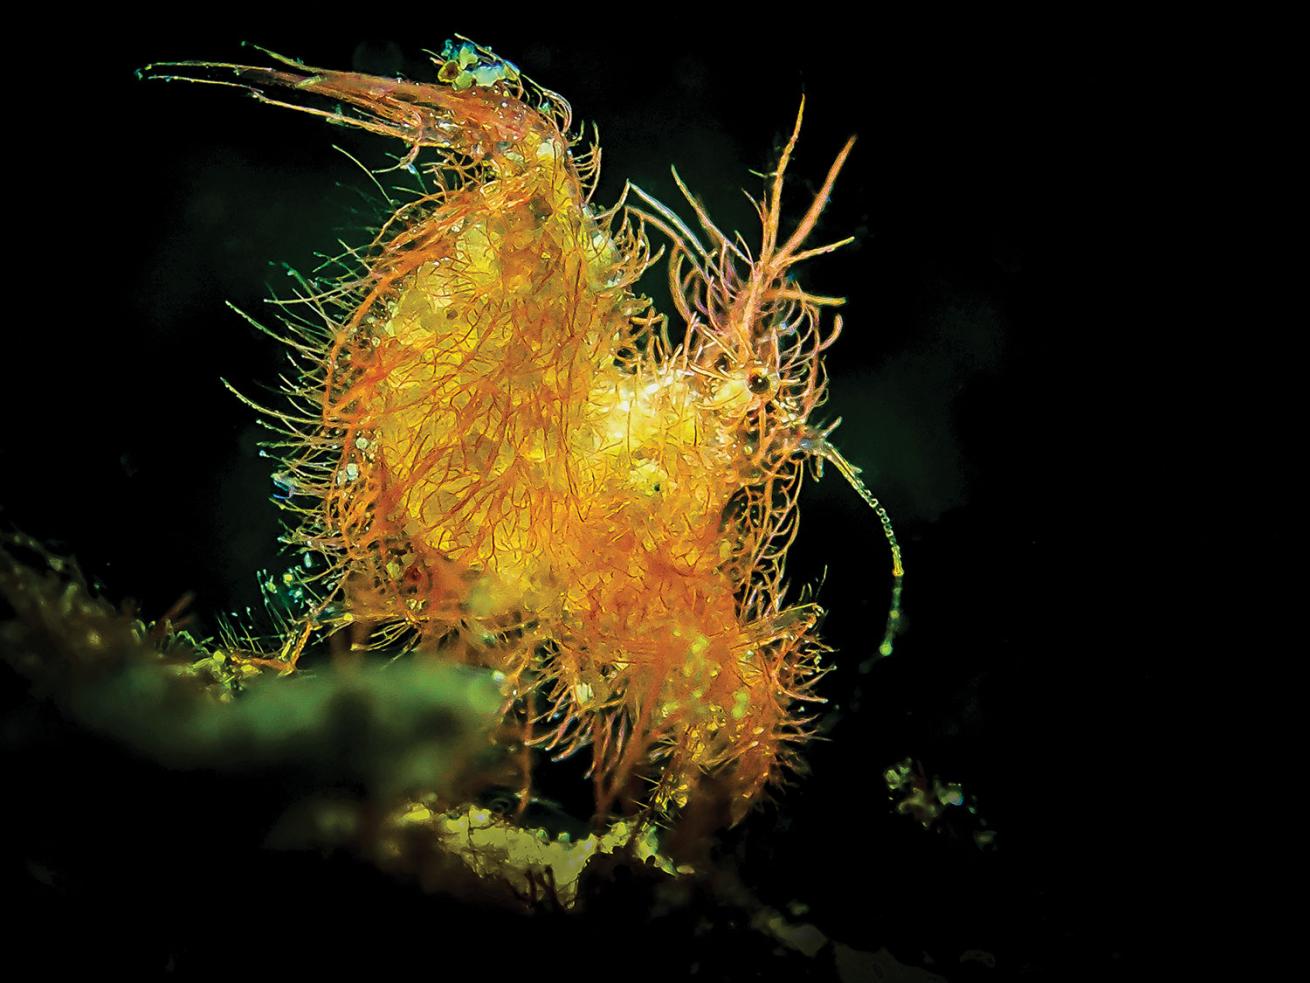 A hairy shrimp.